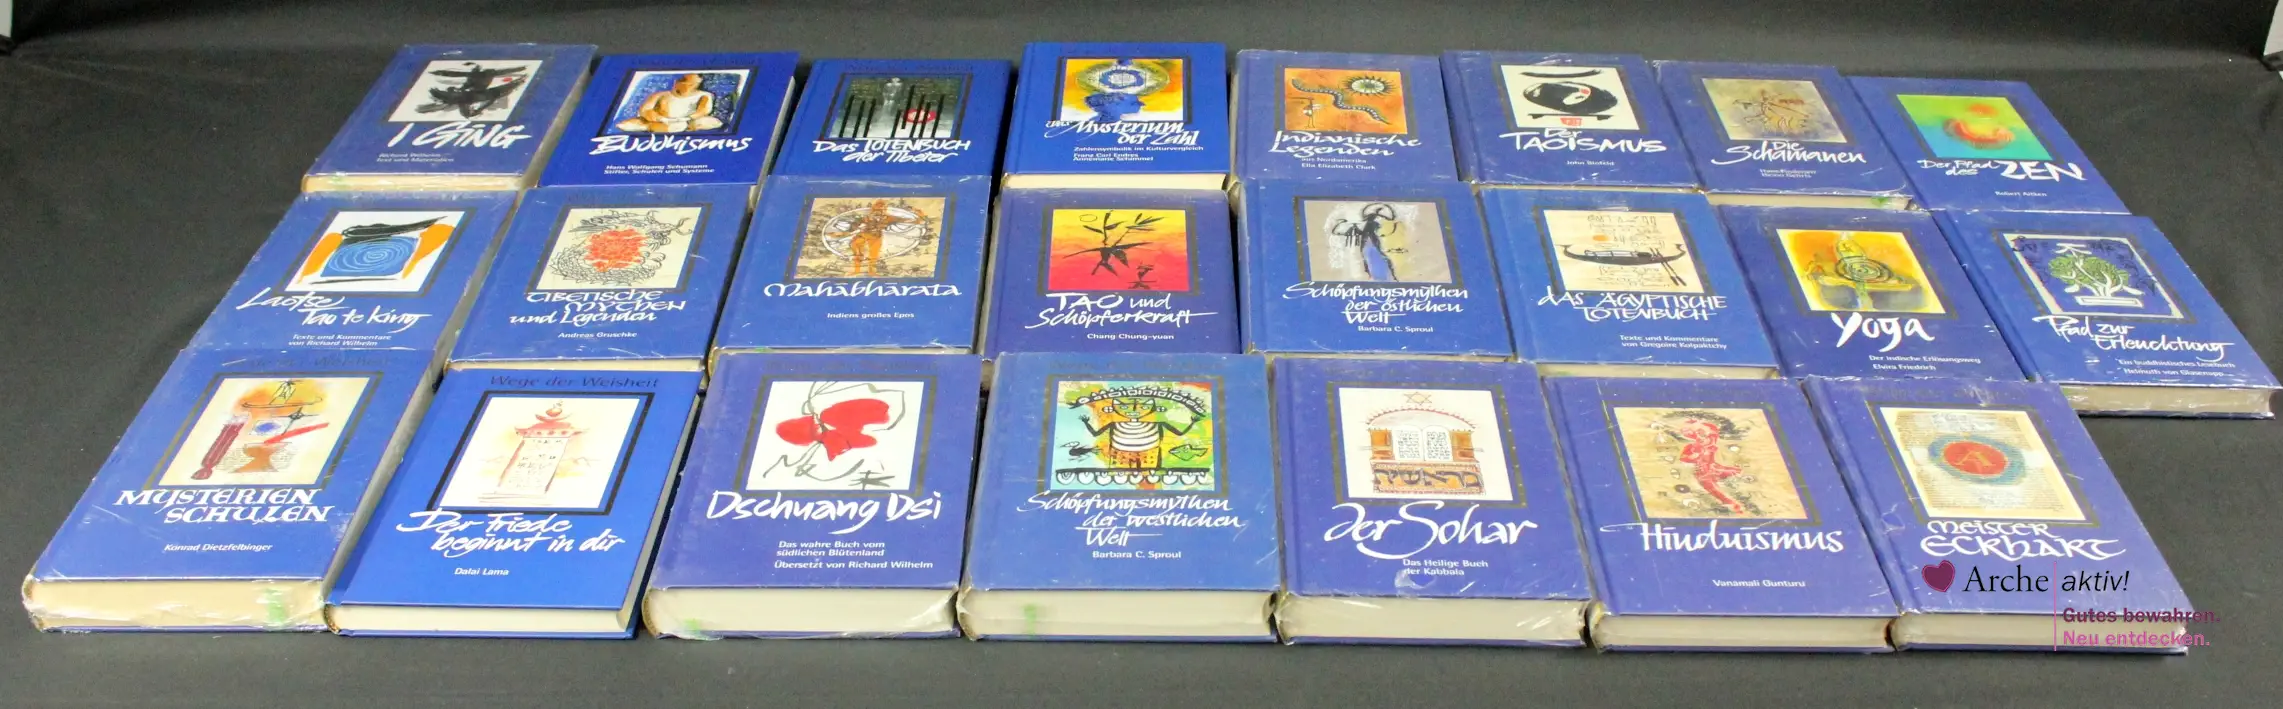 Weltbild Wege der Weisheit Buchreihe, 23 Bände, neu OVP und neuwertig